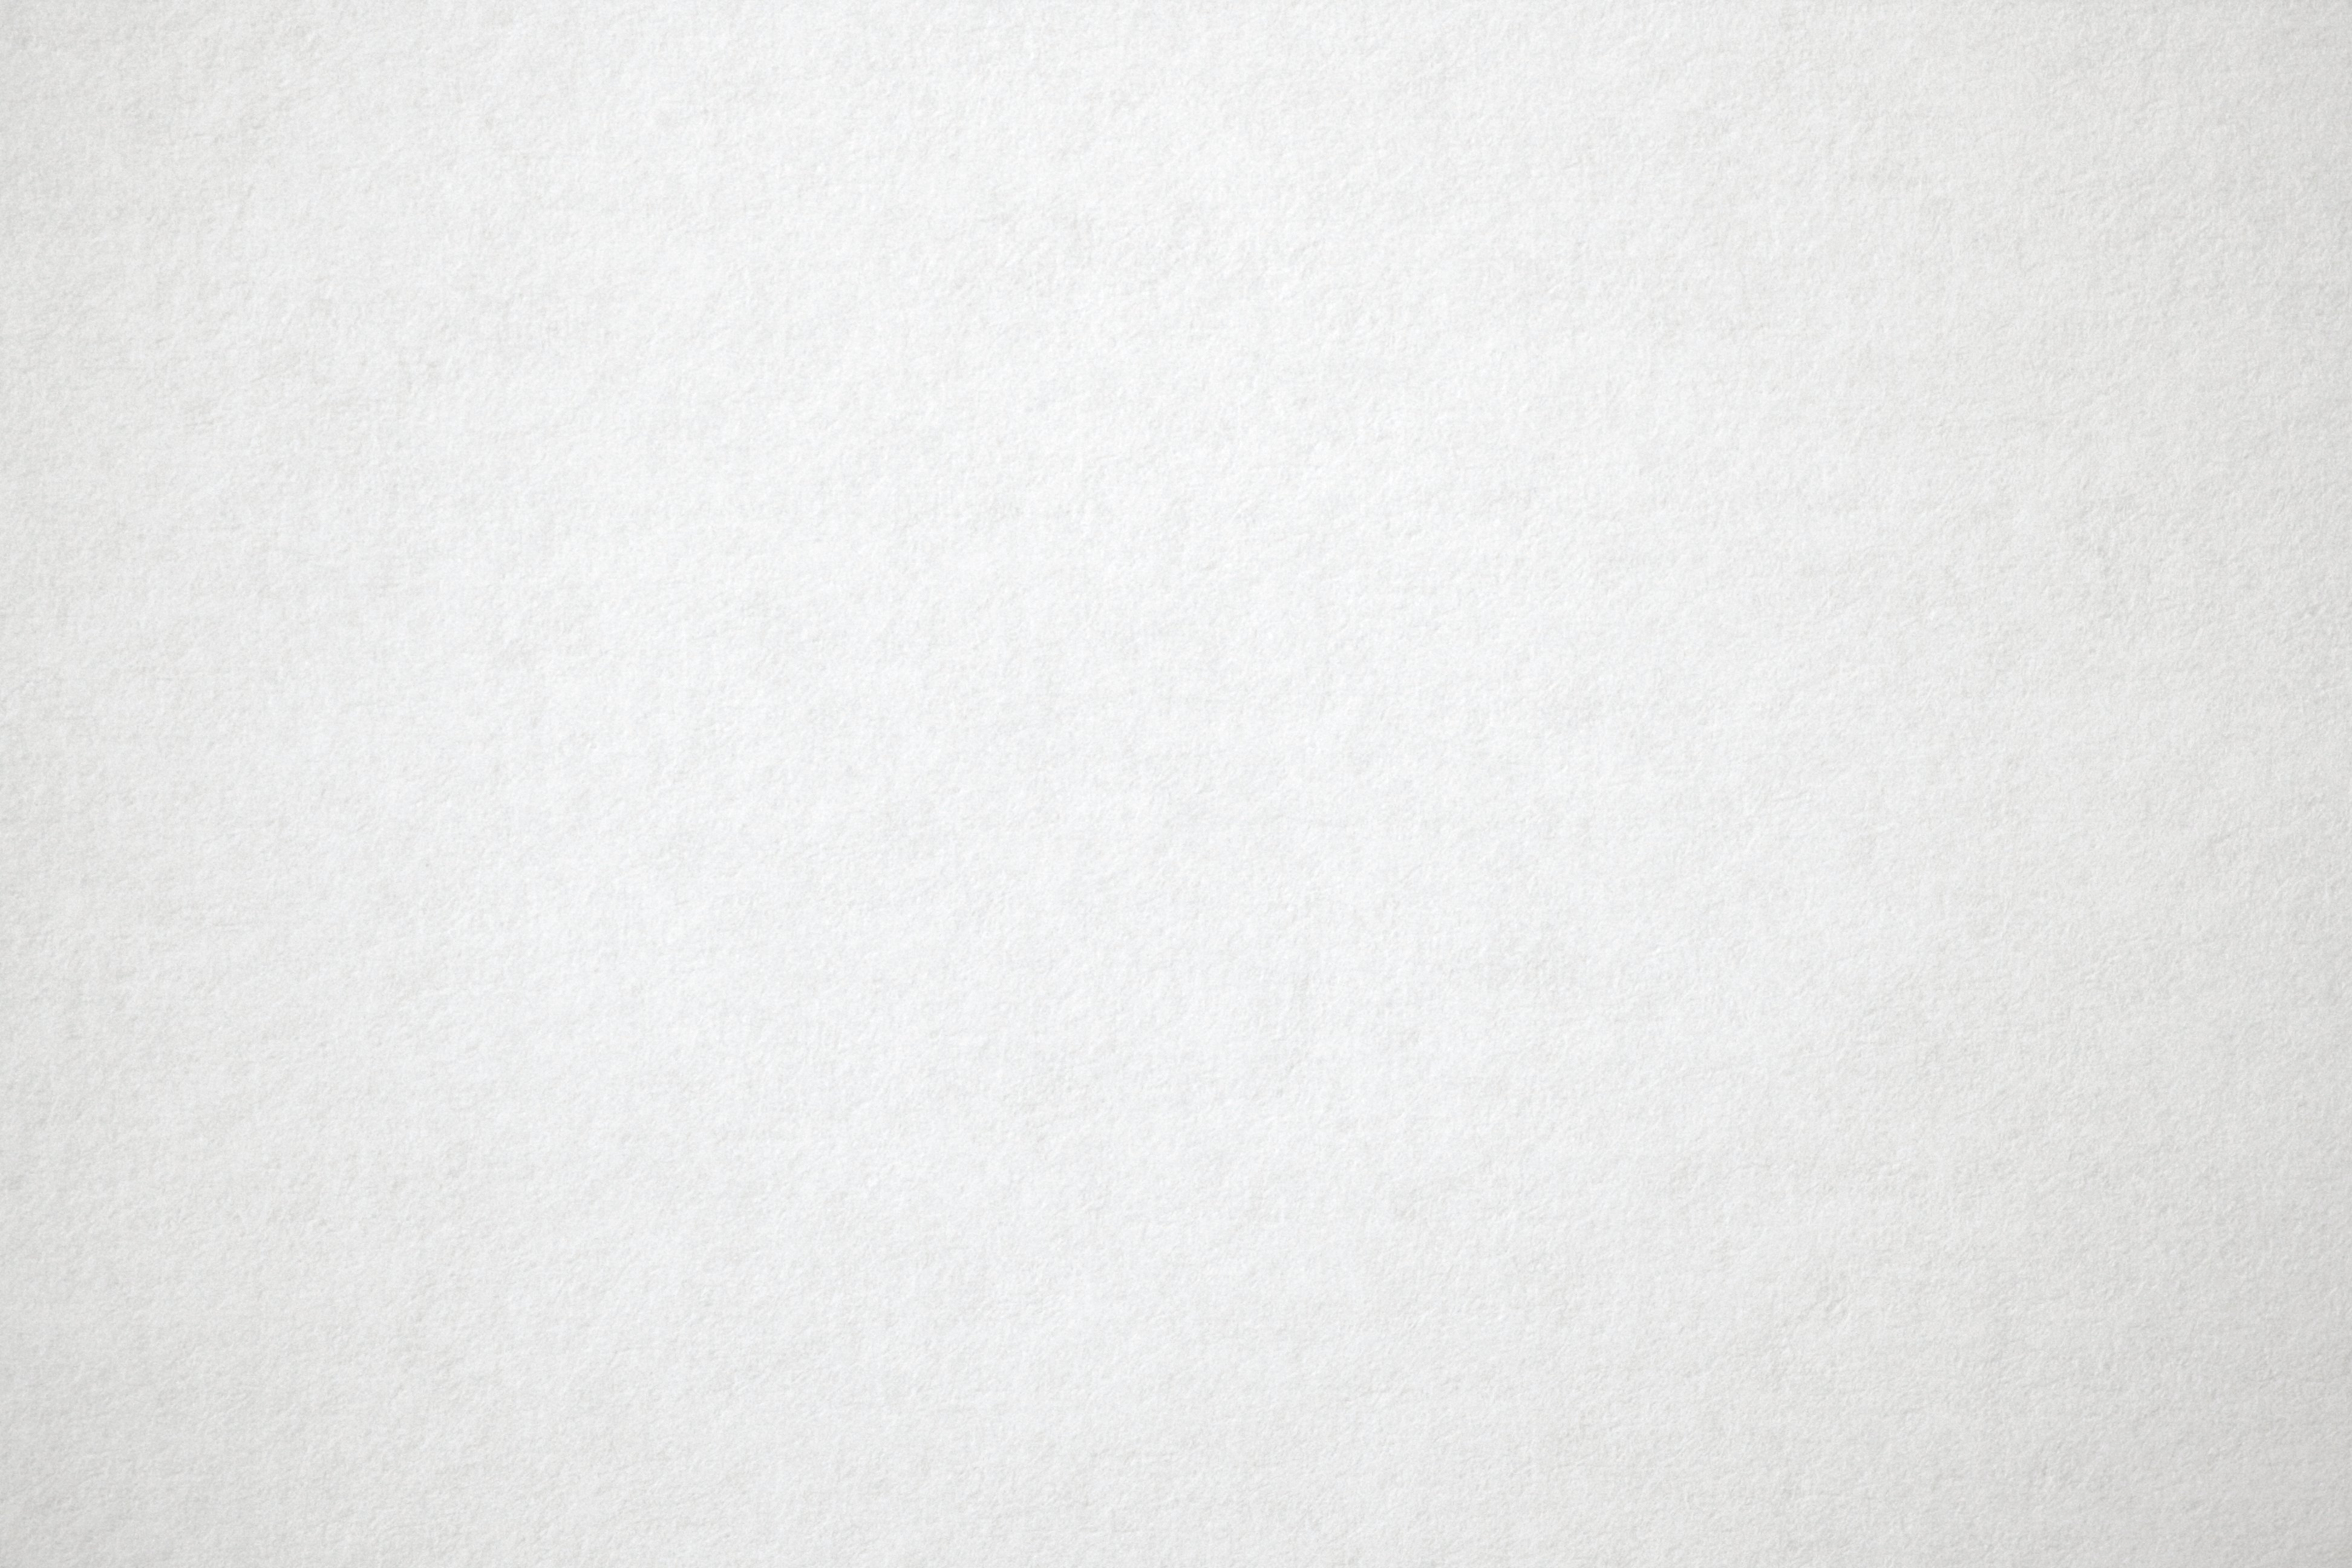 Sự đa dạng của textures giấy nền trắng sẽ khiến bạn phải say mê. Từ những kiểu dáng đơn giản, tinh tế đến những họa tiết độc đáo, bạn đều có thể tìm thấy những điều mình đang tìm kiếm tại đây. Hãy để cho hình ảnh của bạn trở nên độc đáo hơn với textures giấy nền trắng.